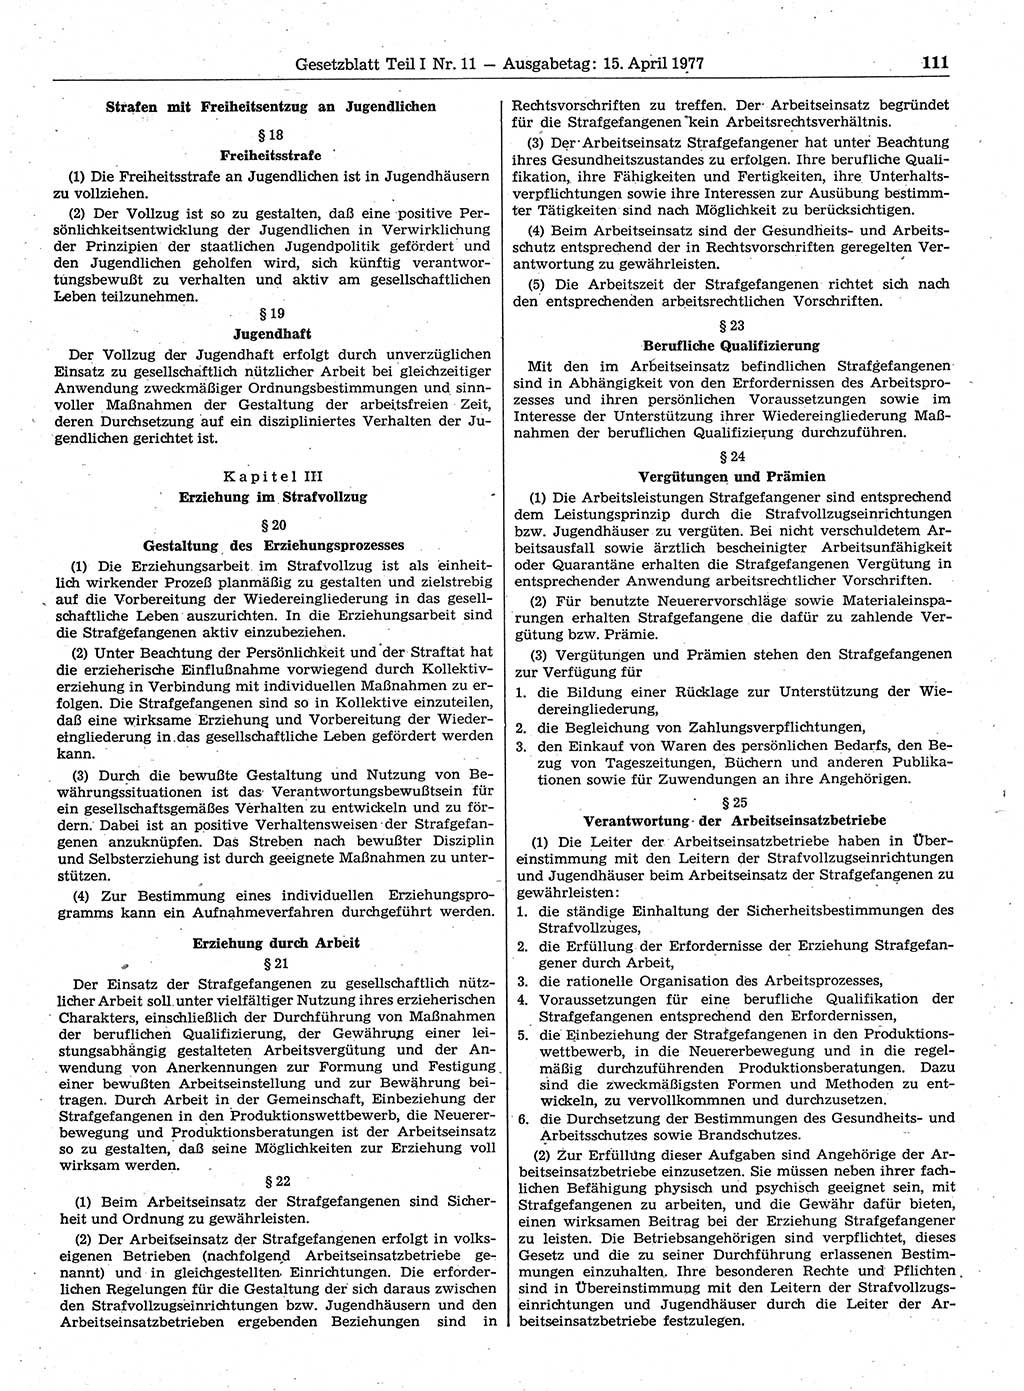 Gesetzblatt (GBl.) der Deutschen Demokratischen Republik (DDR) Teil Ⅰ 1977, Seite 111 (GBl. DDR Ⅰ 1977, S. 111)